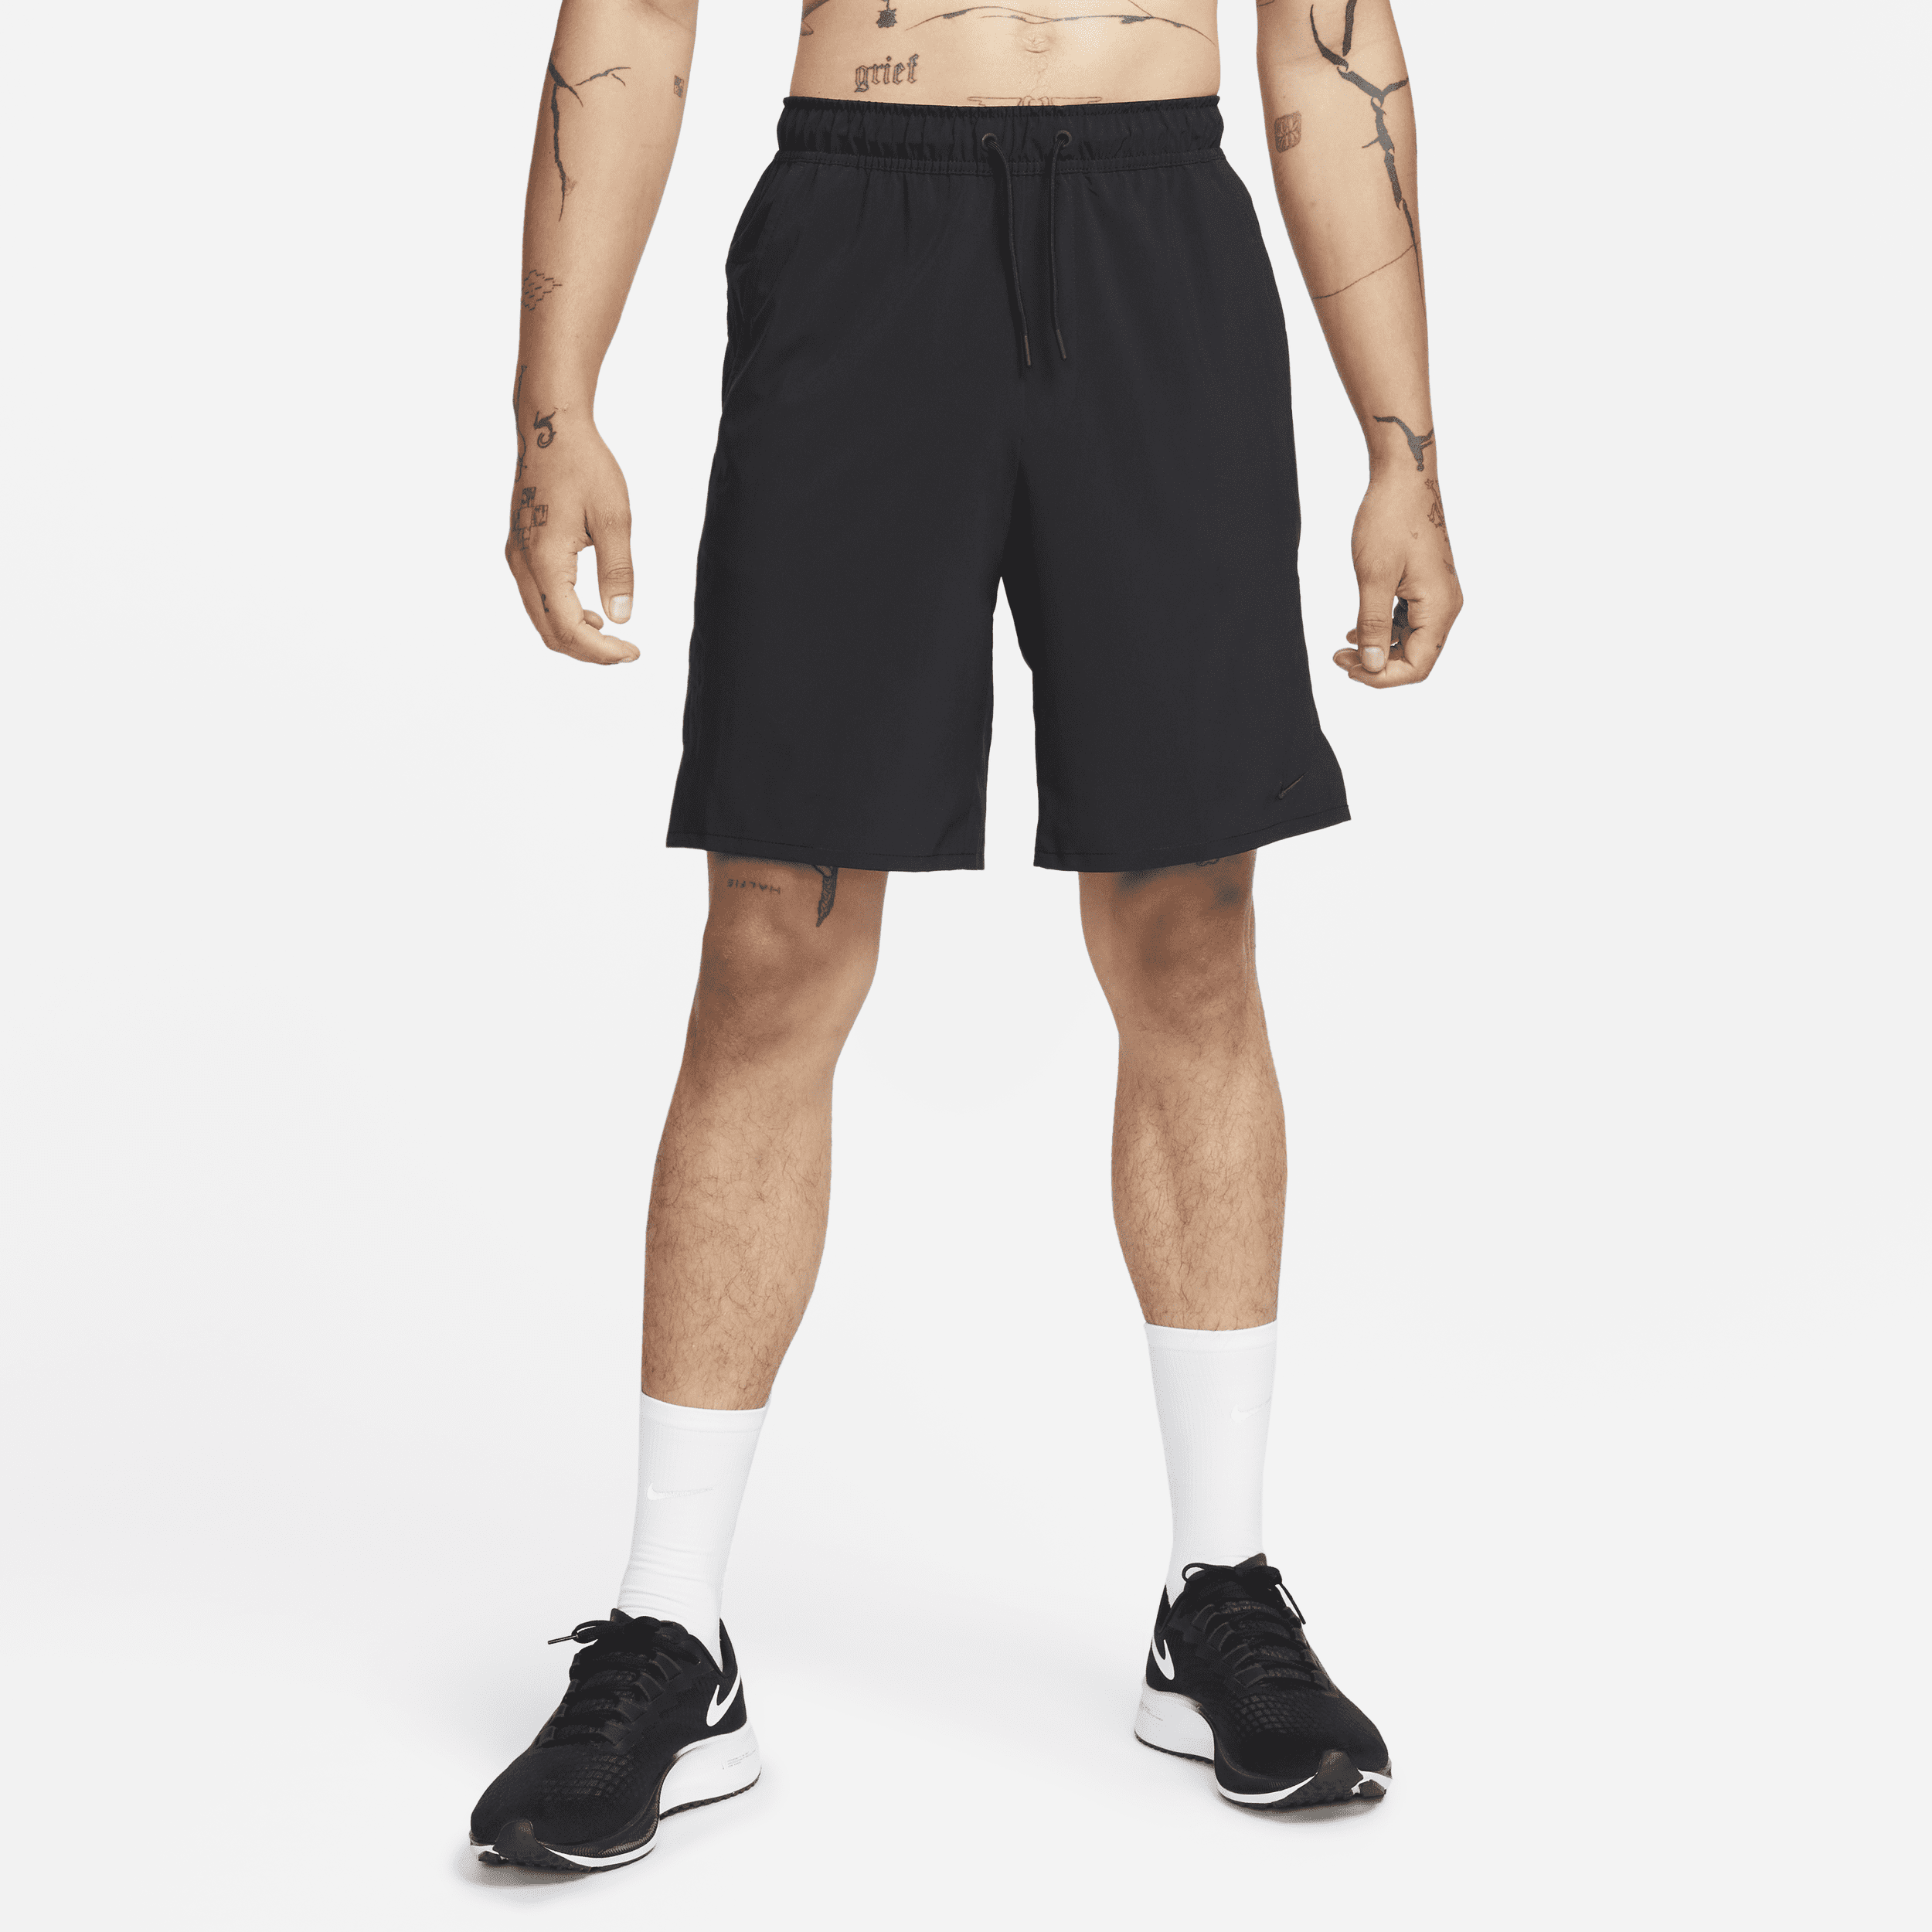 Shorts versatili non foderati Dri-FIT 23 cm Nike Unlimited – Uomo - Nero